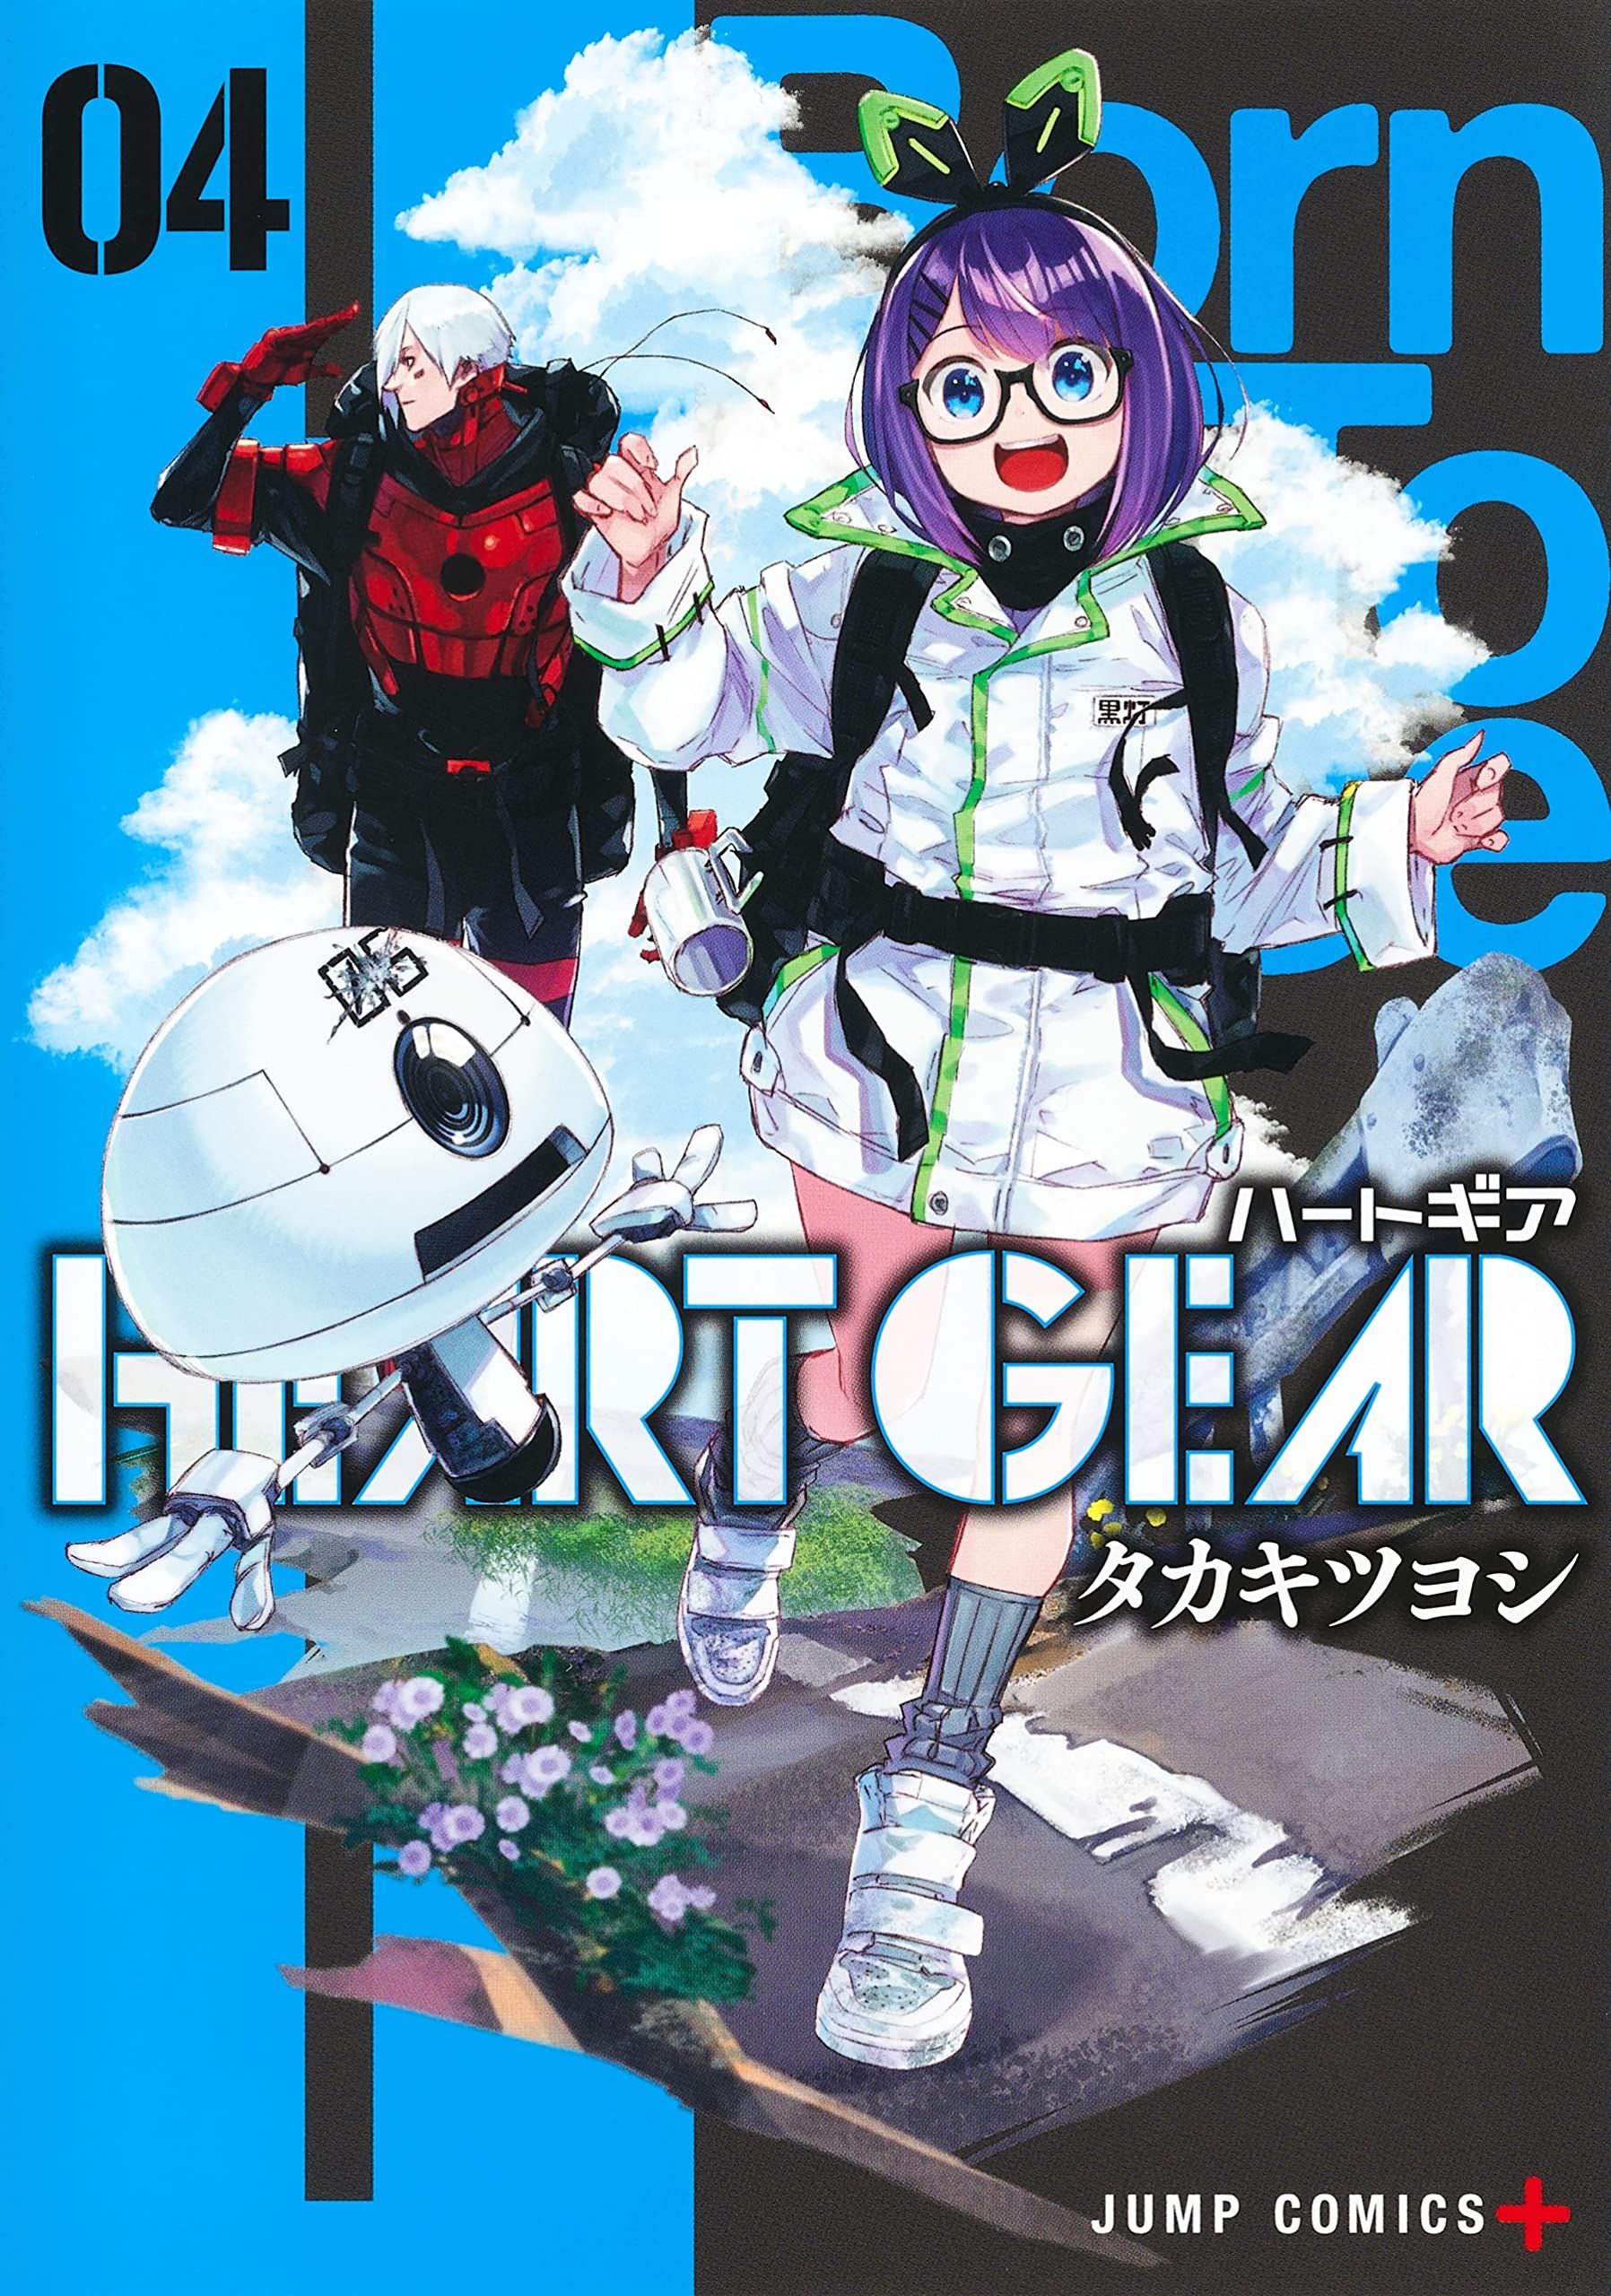 Manga VO HEART GEAR jp Vol.4 ( TAKAKI Tsuyoshi TAKAKI Tsuyoshi ) HEART GEAR  - Manga news